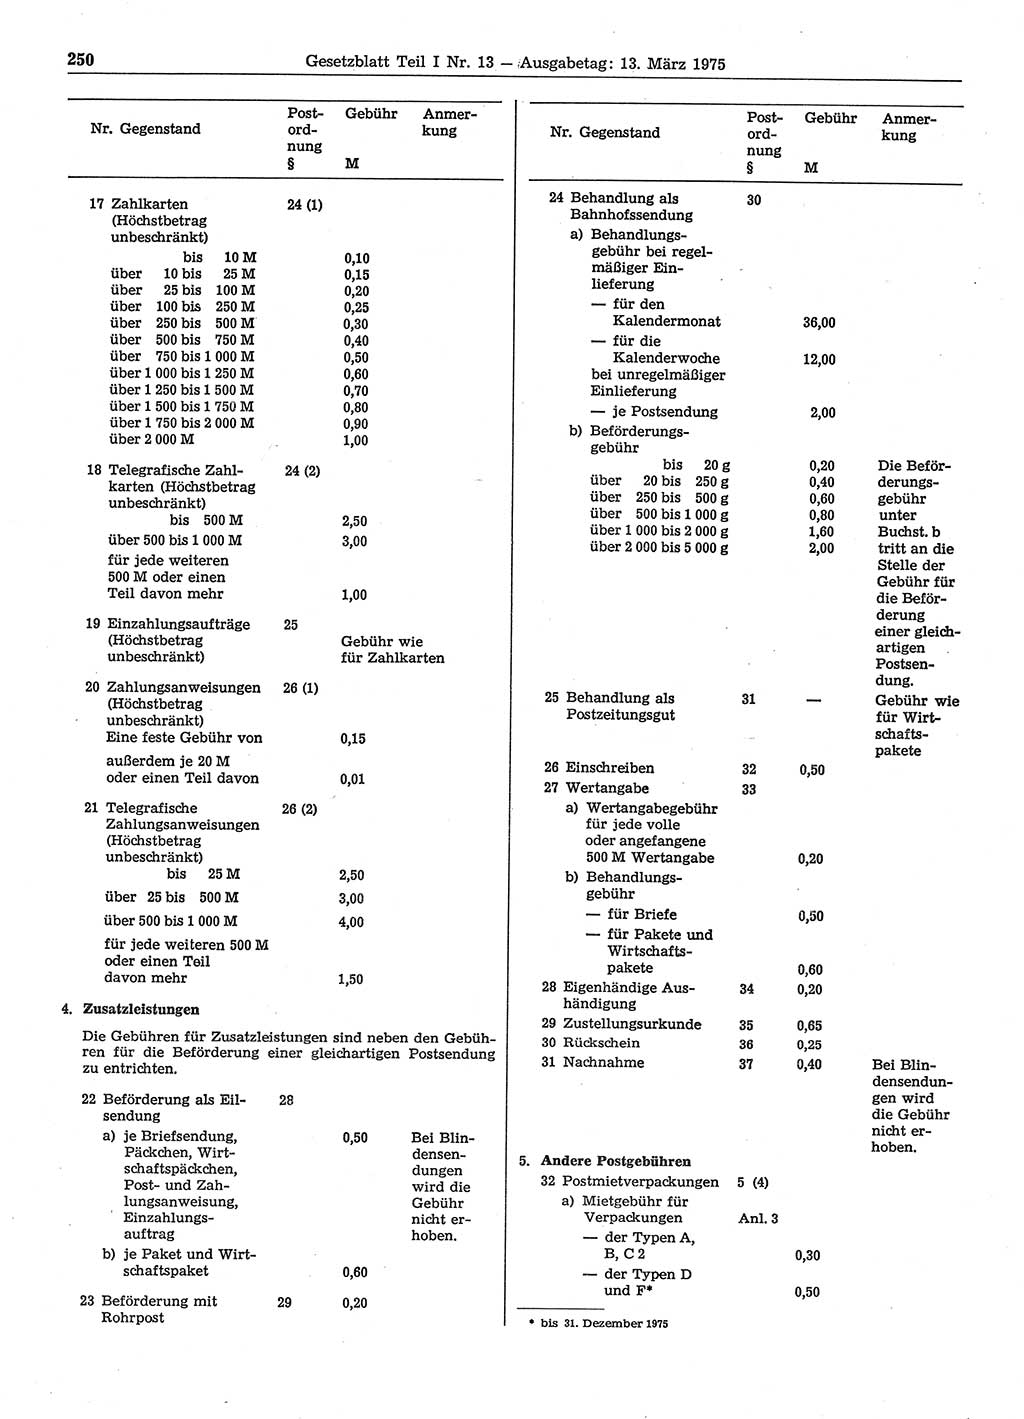 Gesetzblatt (GBl.) der Deutschen Demokratischen Republik (DDR) Teil Ⅰ 1975, Seite 250 (GBl. DDR Ⅰ 1975, S. 250)